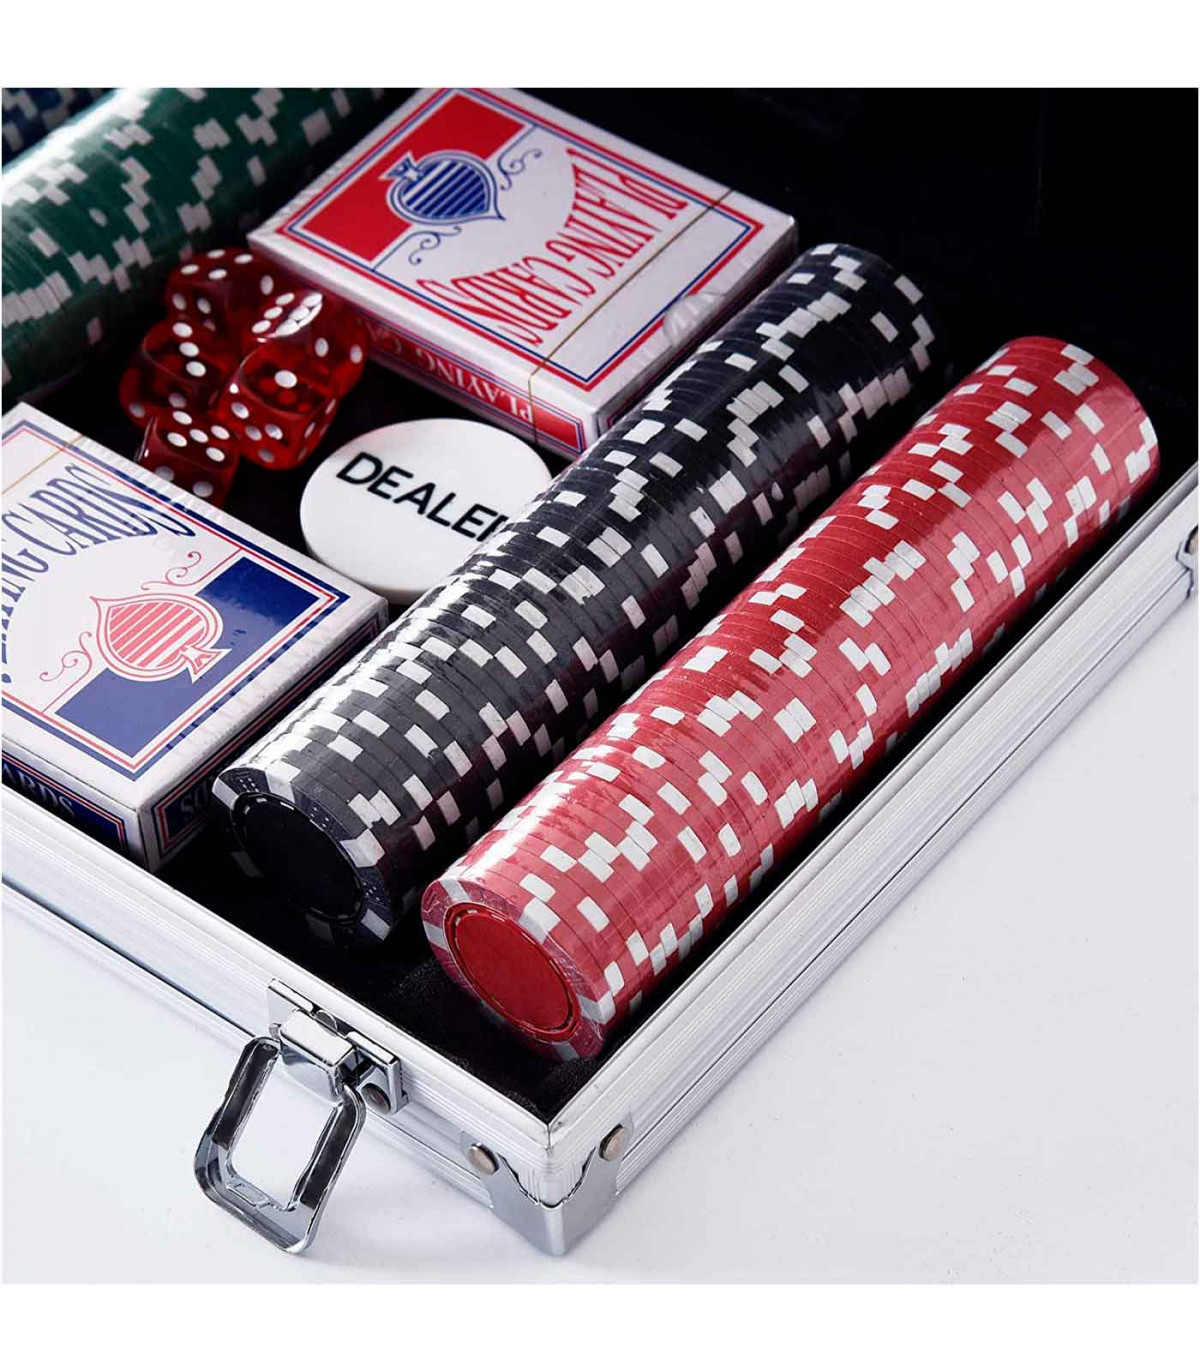 Tradineur - Juego de póker con 200 piezas - Fichas de 11,5 gramos, 2  Barajas de Cartas - Incluye maletín de metal - 8 x 31,5 x 2